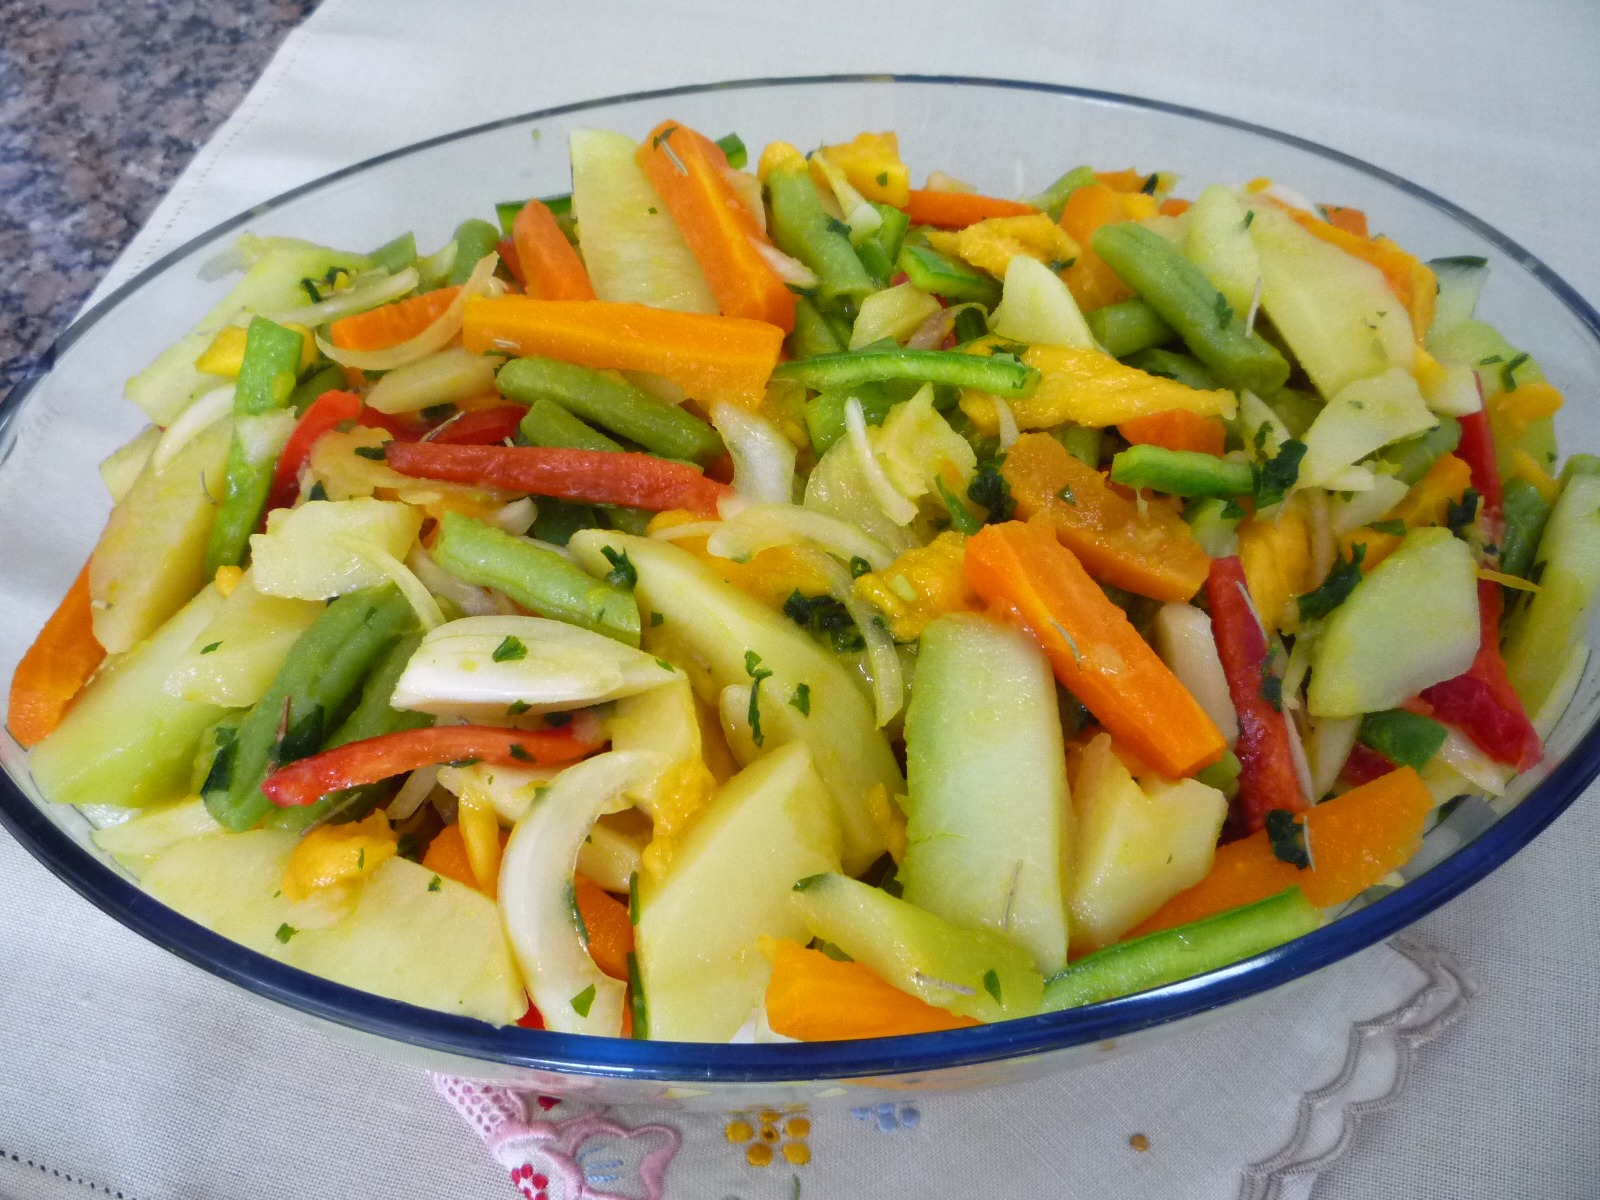 Salada de Legumes